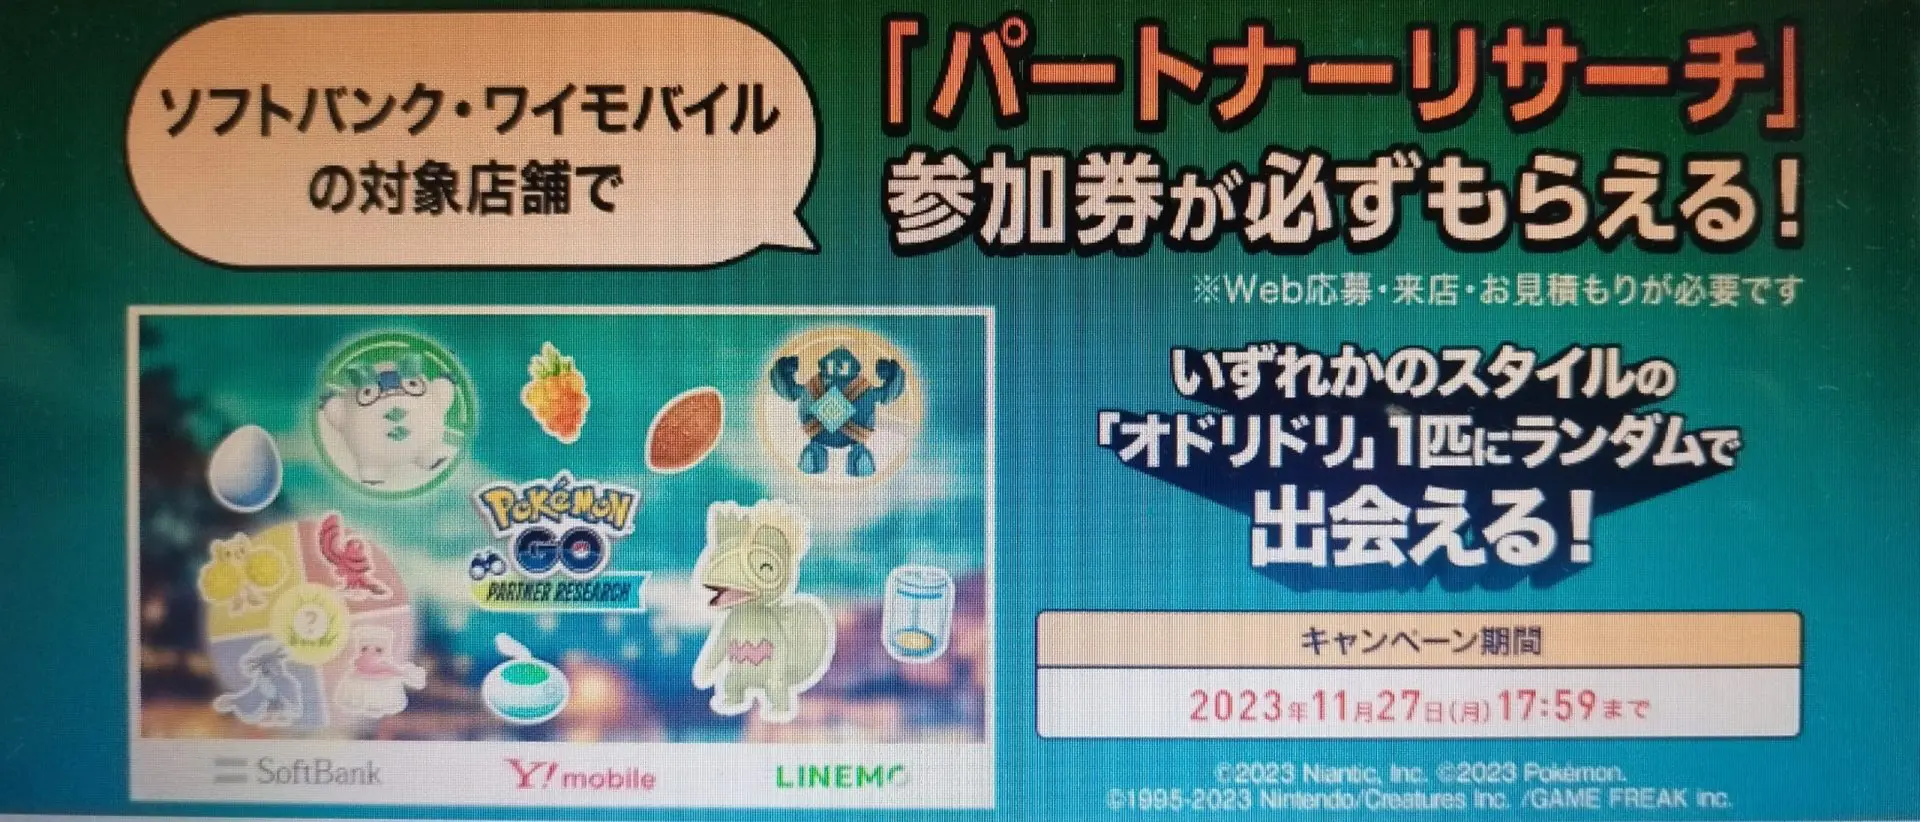 「『Pokémon GO』パートナーリサーチ」の参加券がもらえるキャンペーン2023